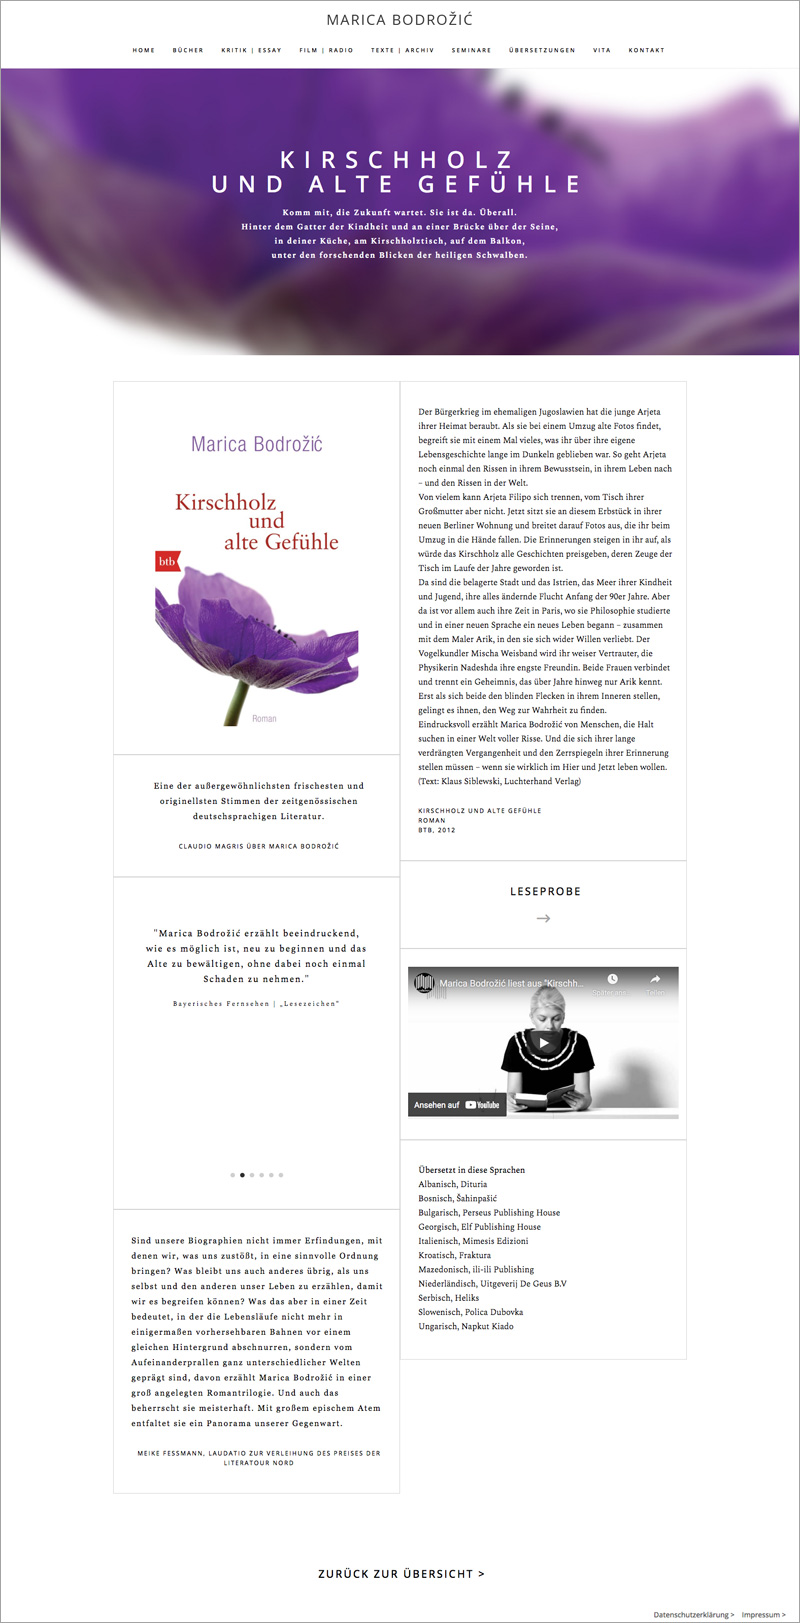 Webdesign für die Schriftstellerin Marica Bodrožić | Susanne Breuer | Webdesign & Grafikdesign Köln